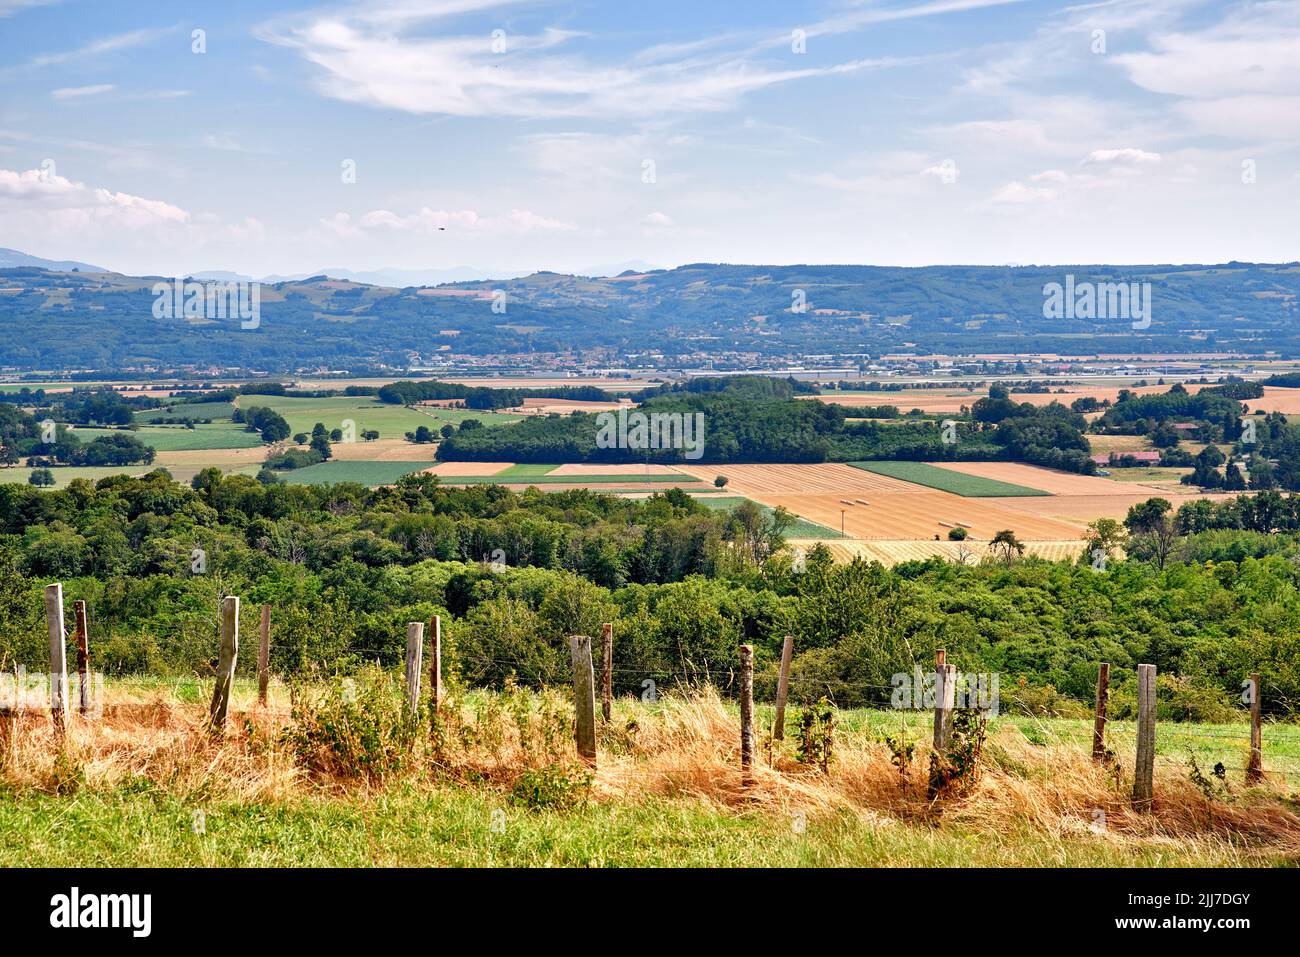 Die Landschaft Blick auf große Farm Land mit üppigen grünen Pflanzen. Landschaftlich reizvoller Blick auf nachhaltige Landwirtschaft und Natur mit einem trüben blauen Himmel Stockfoto